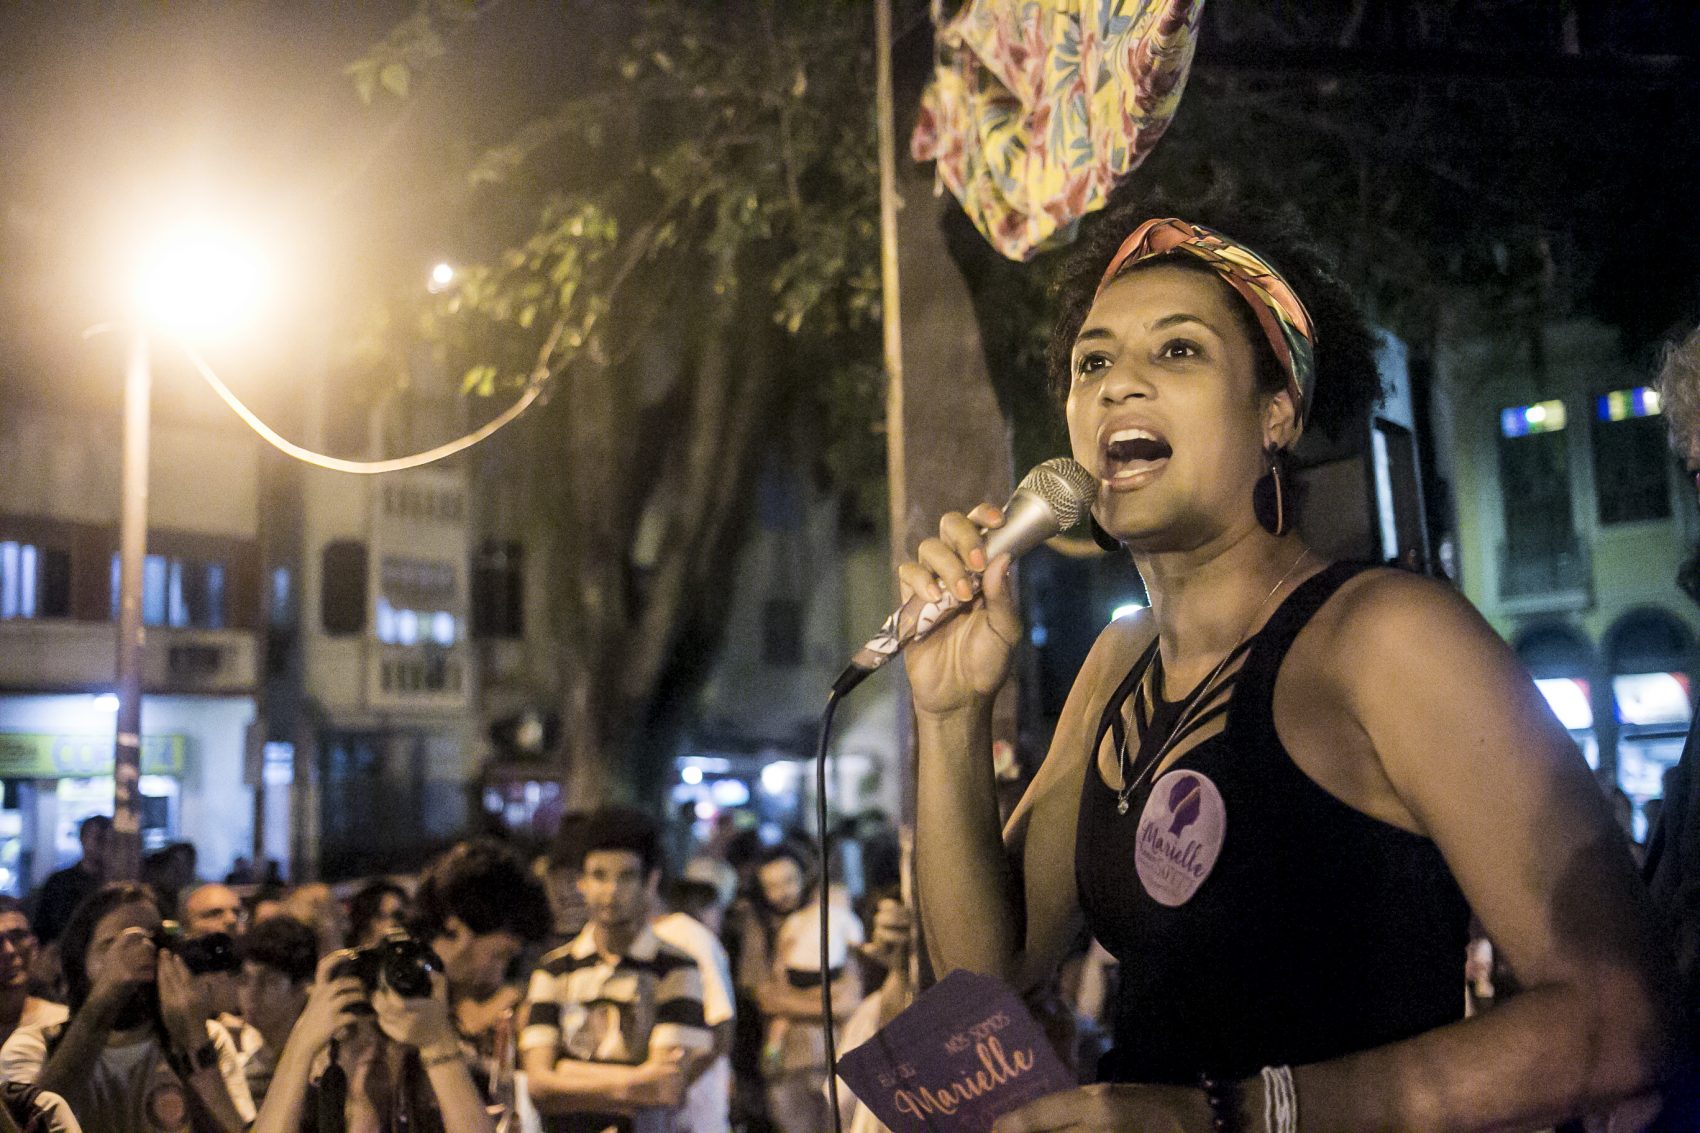 Por seu ativismo em defesa dos direitos humanos e contra a violência, Marielle foi assassinada em março de 2018, no Rio